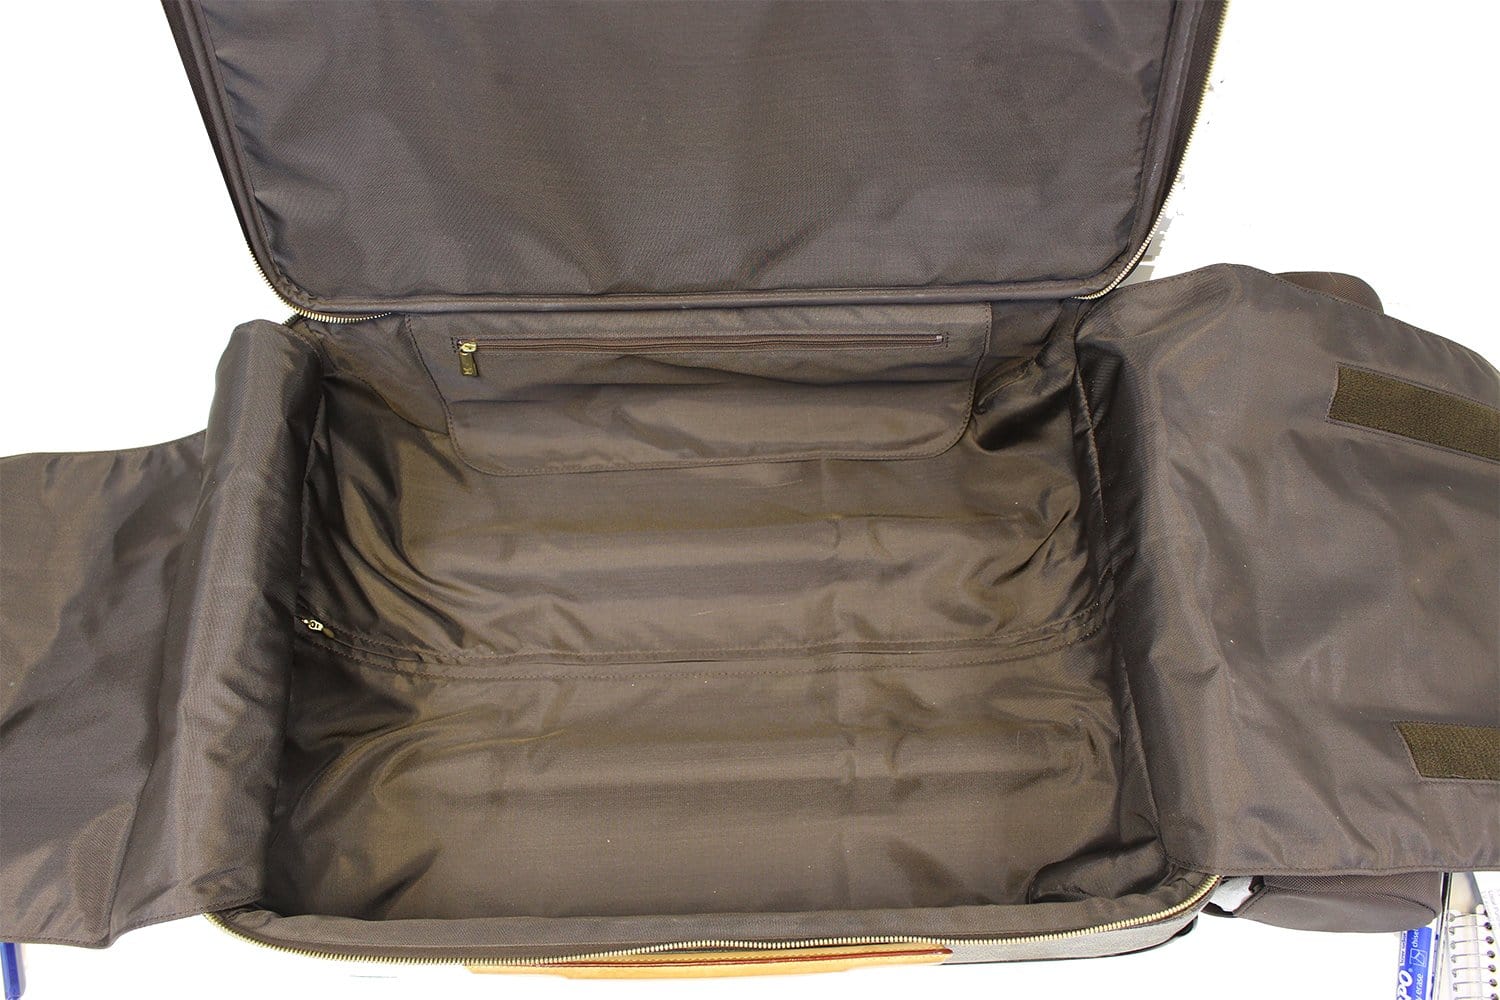 Authentic LOUIS VUITTON Pegase 55 Monogram Canvas Travel Rolling Suitcase  #51524